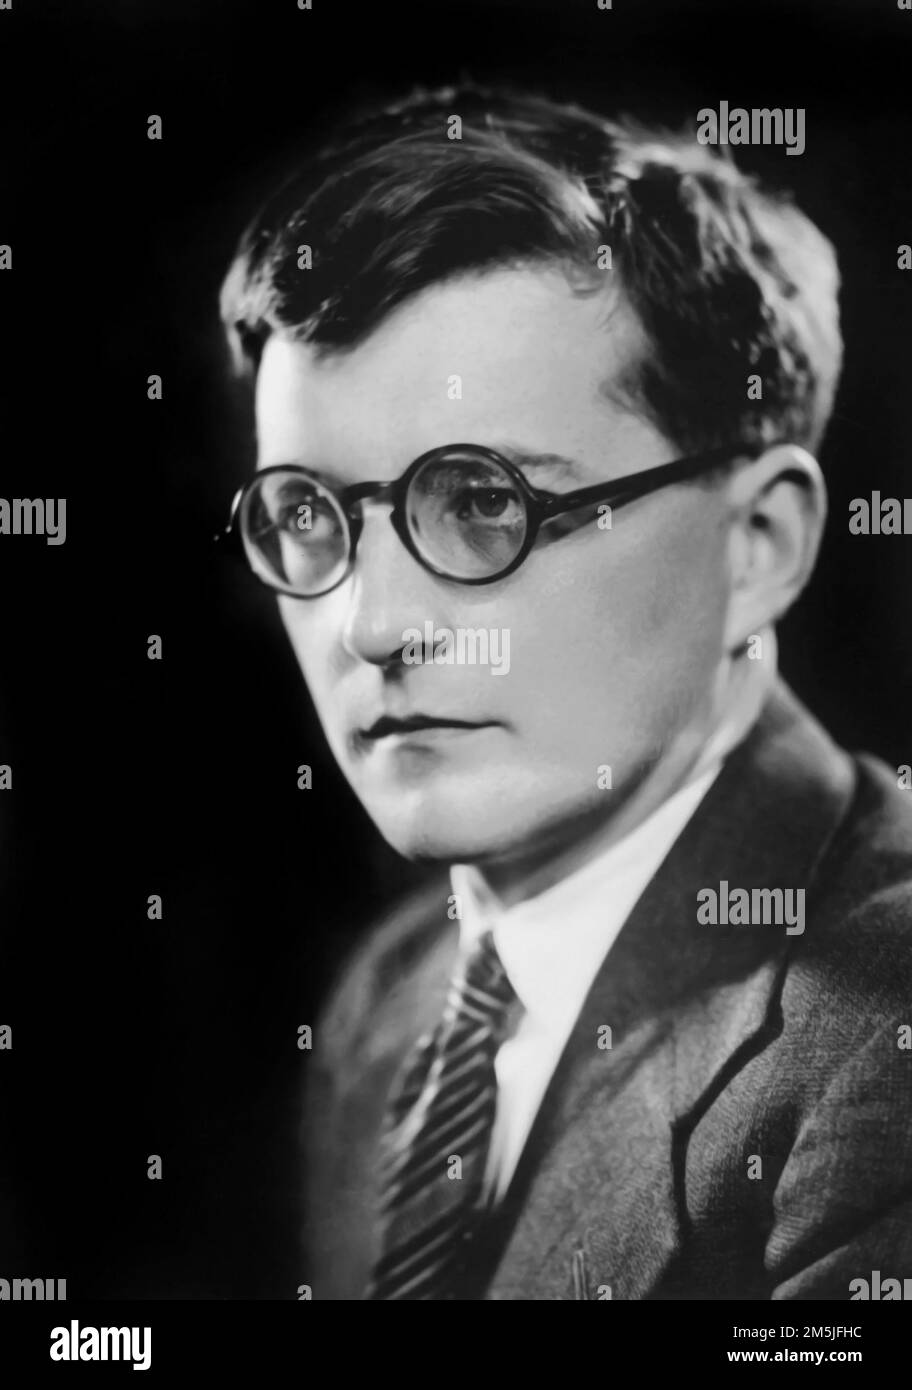 Shostakovich. Ritratto del compositore e pianista russo Dmitri Dmitriyevich Shostakovich (1906-1975), inizio 1930s Foto Stock